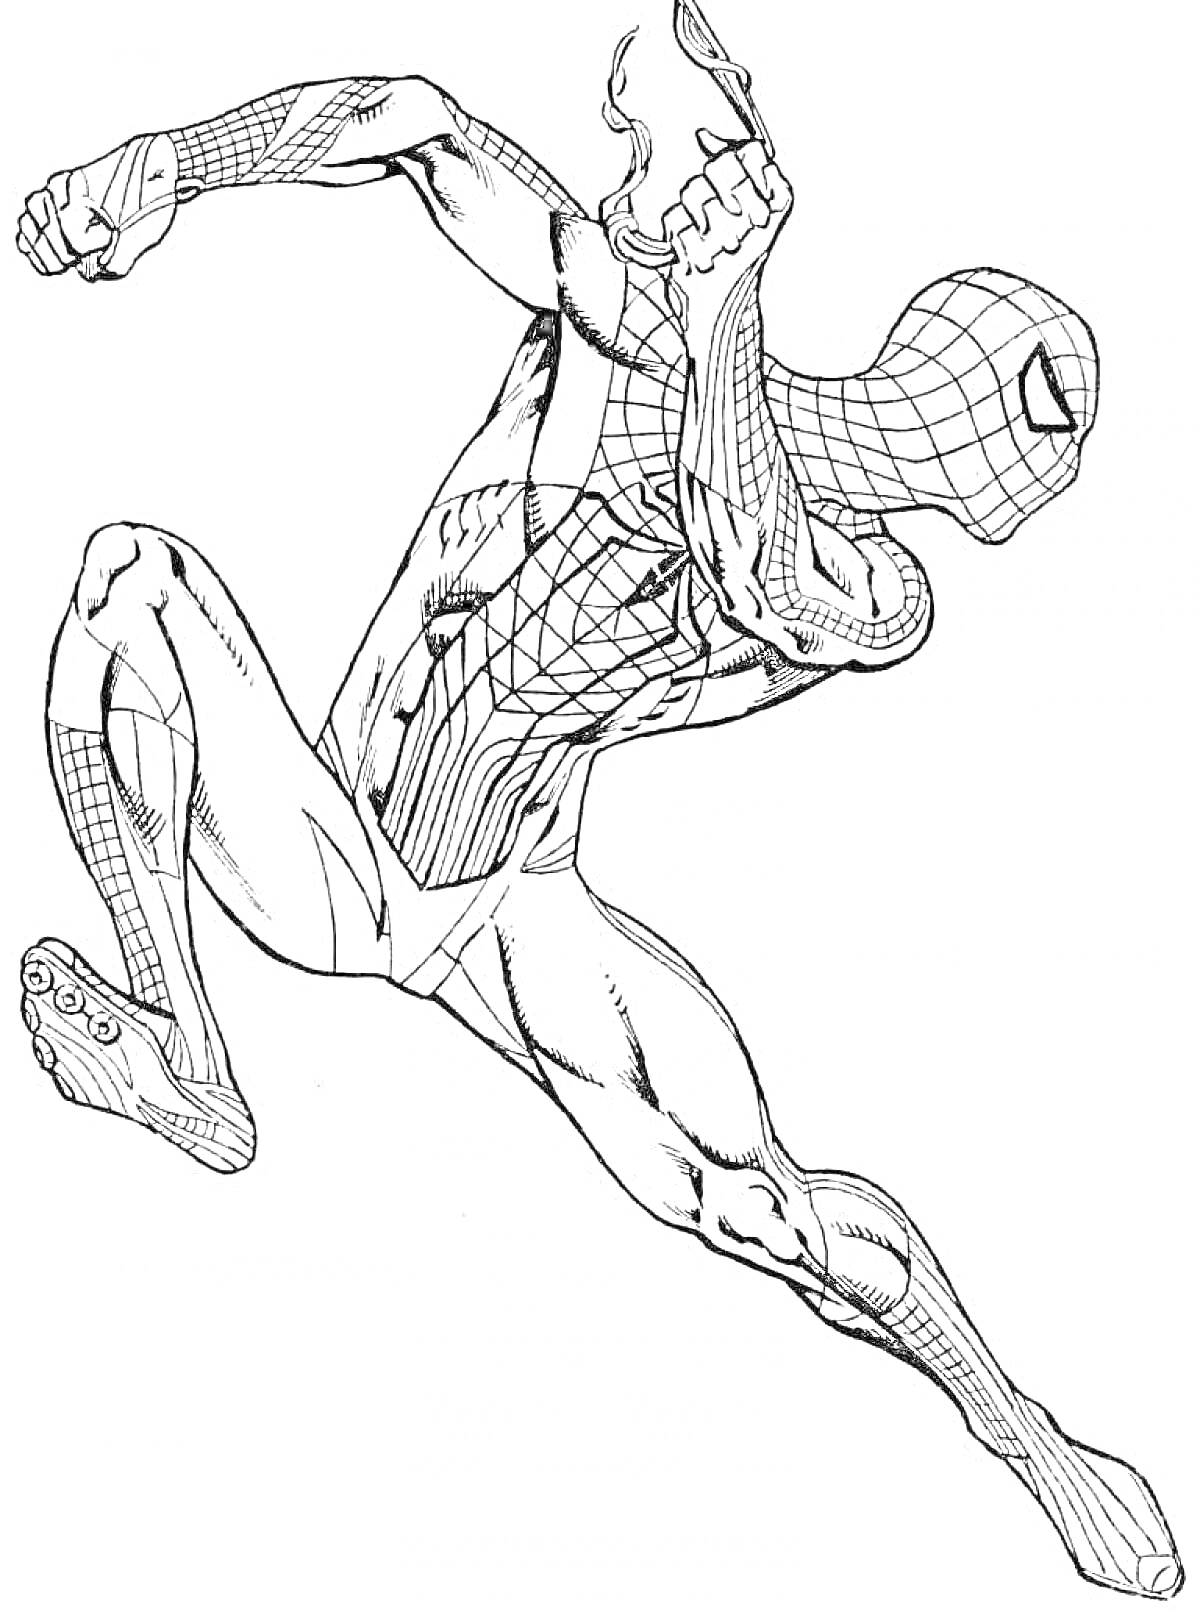 Раскраска Человек-паук в прыжке с паутиной, костюм с сетчатым узором